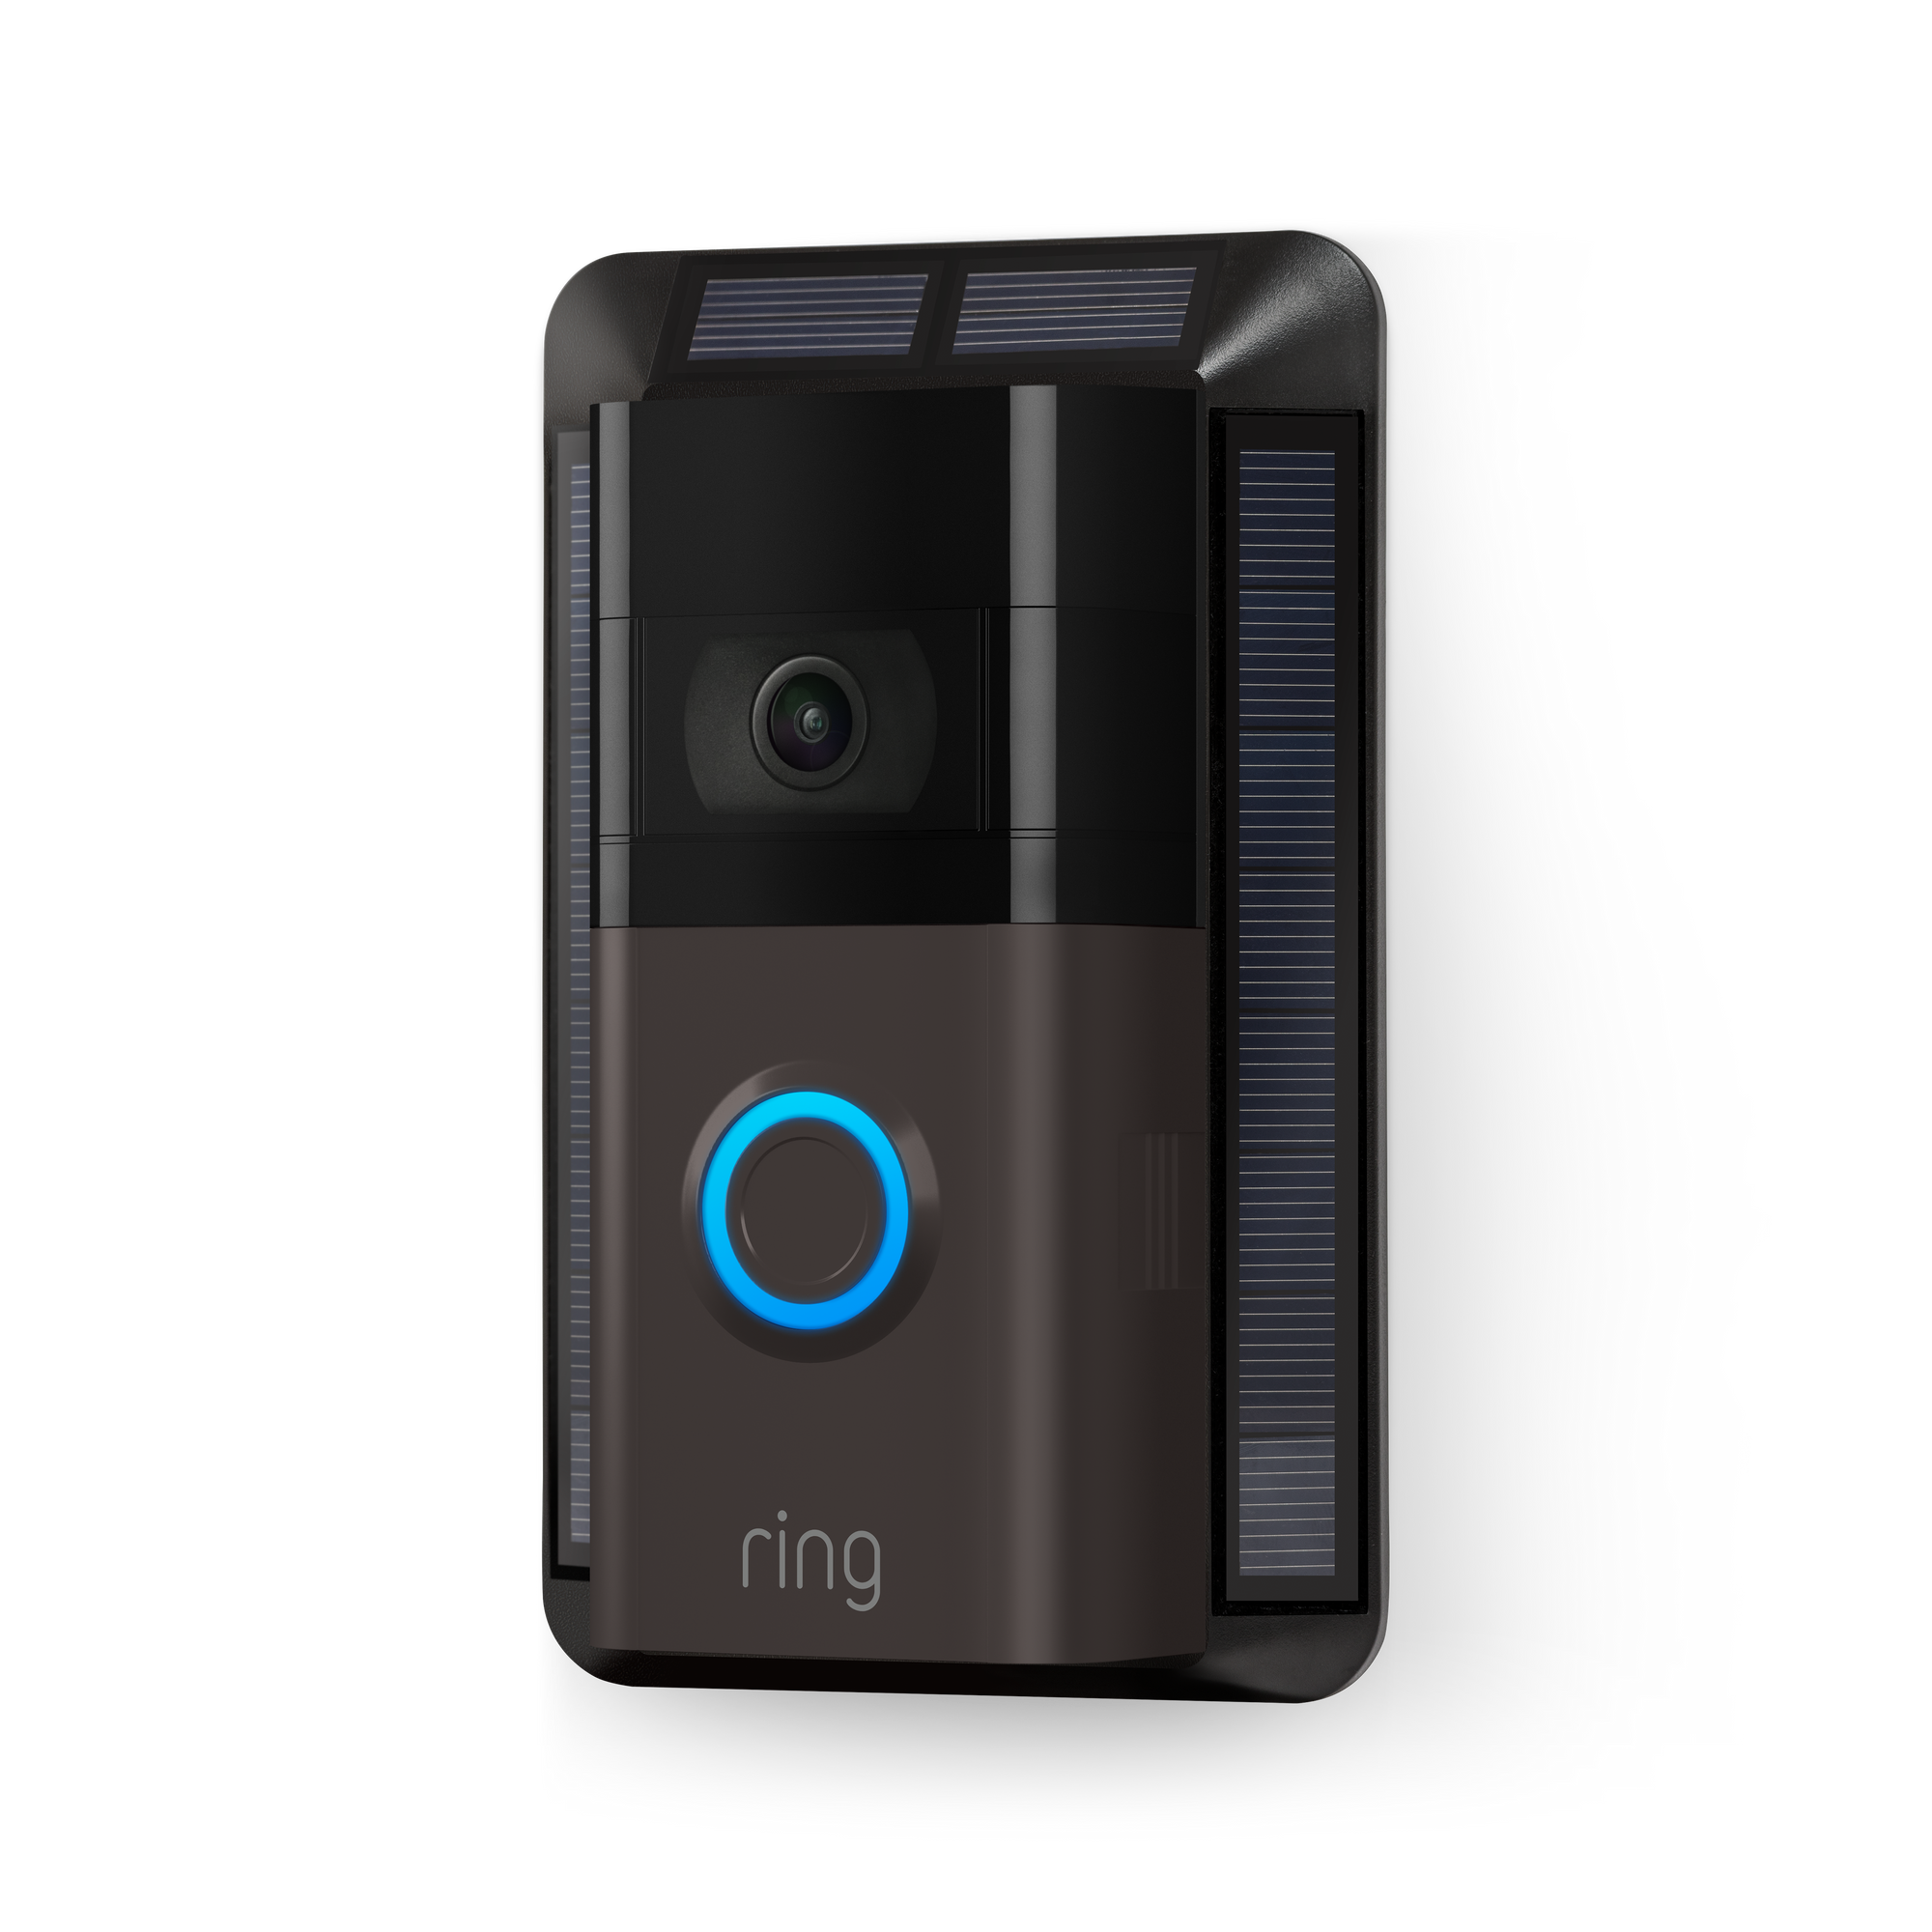 charging ring video doorbell 2